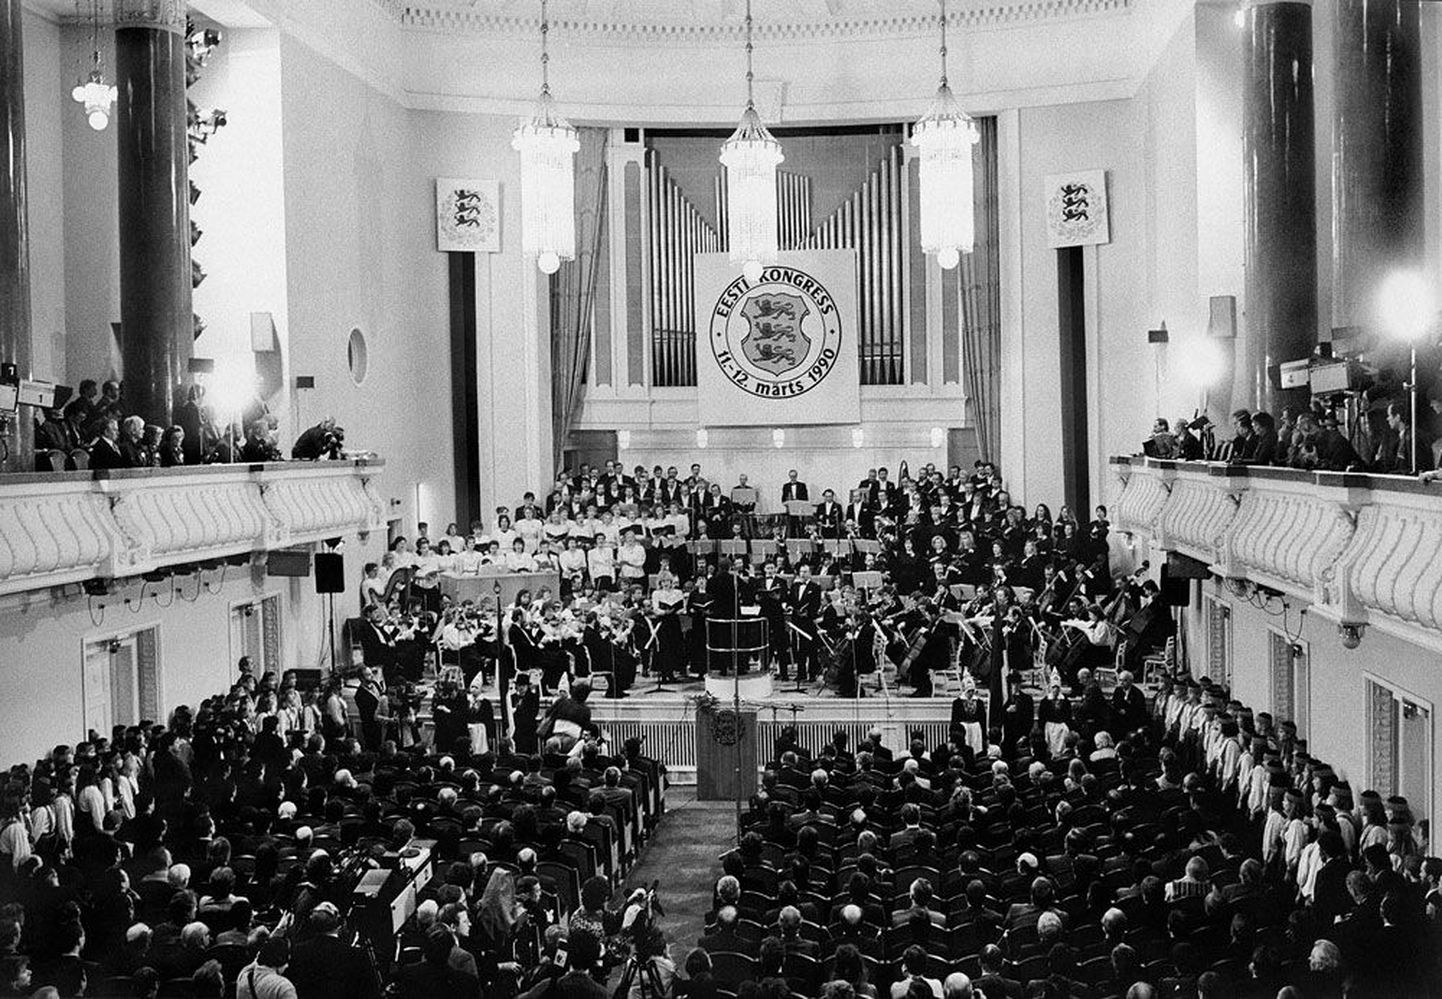 11. märts 1990. Rahvuslik-demokraatliku kodanikualgatuse kulminatsioon – Estonia kontserdisaalis avatakse Eesti Kongressi esimene istungjärk.